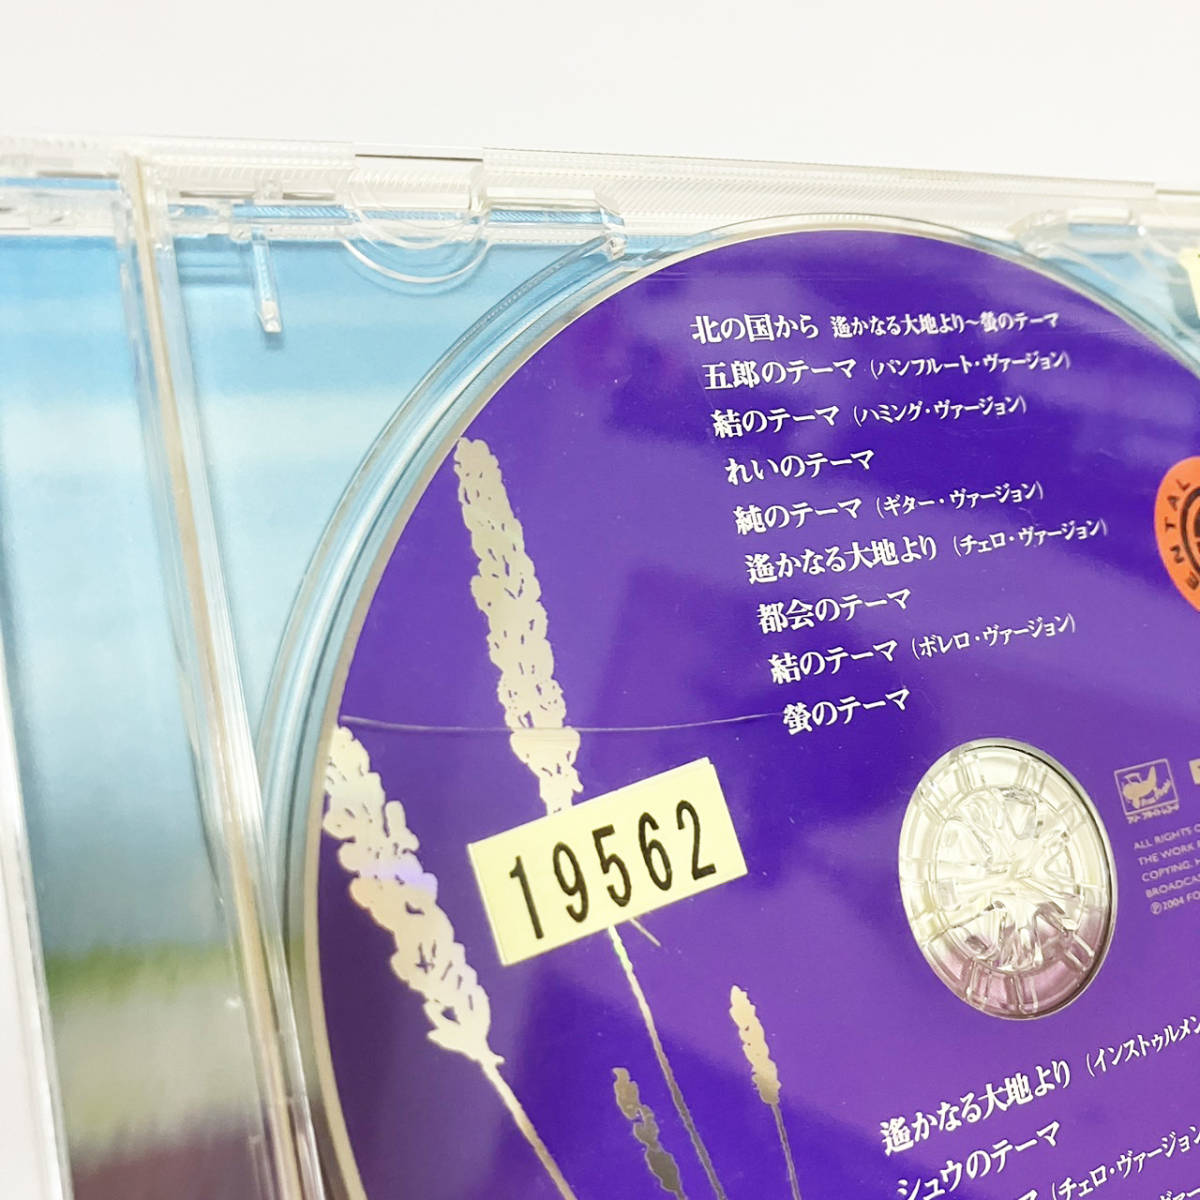 【送料無料】CD 「北の国から」完全盤 【レンタル版】 さだまさしの画像5